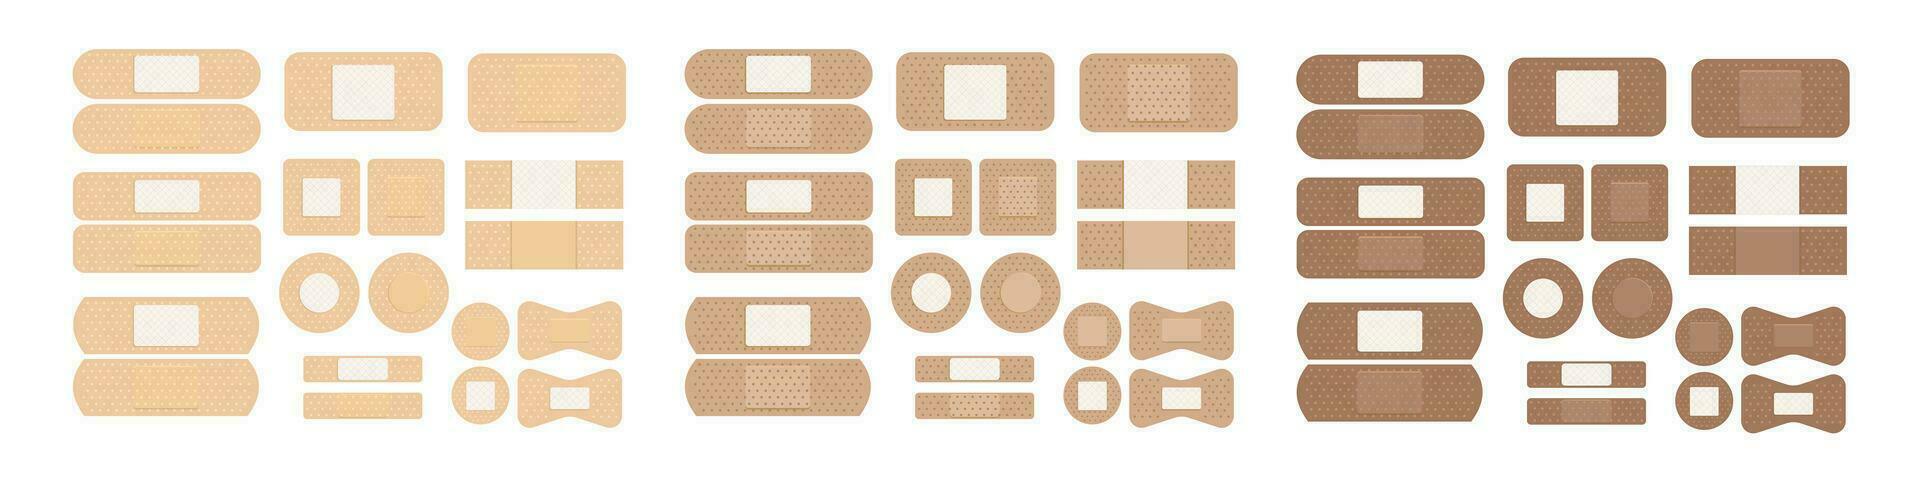 uppsättning av medicinsk plåster för olika hud färger. annorlunda lim lappa. vektor illustration